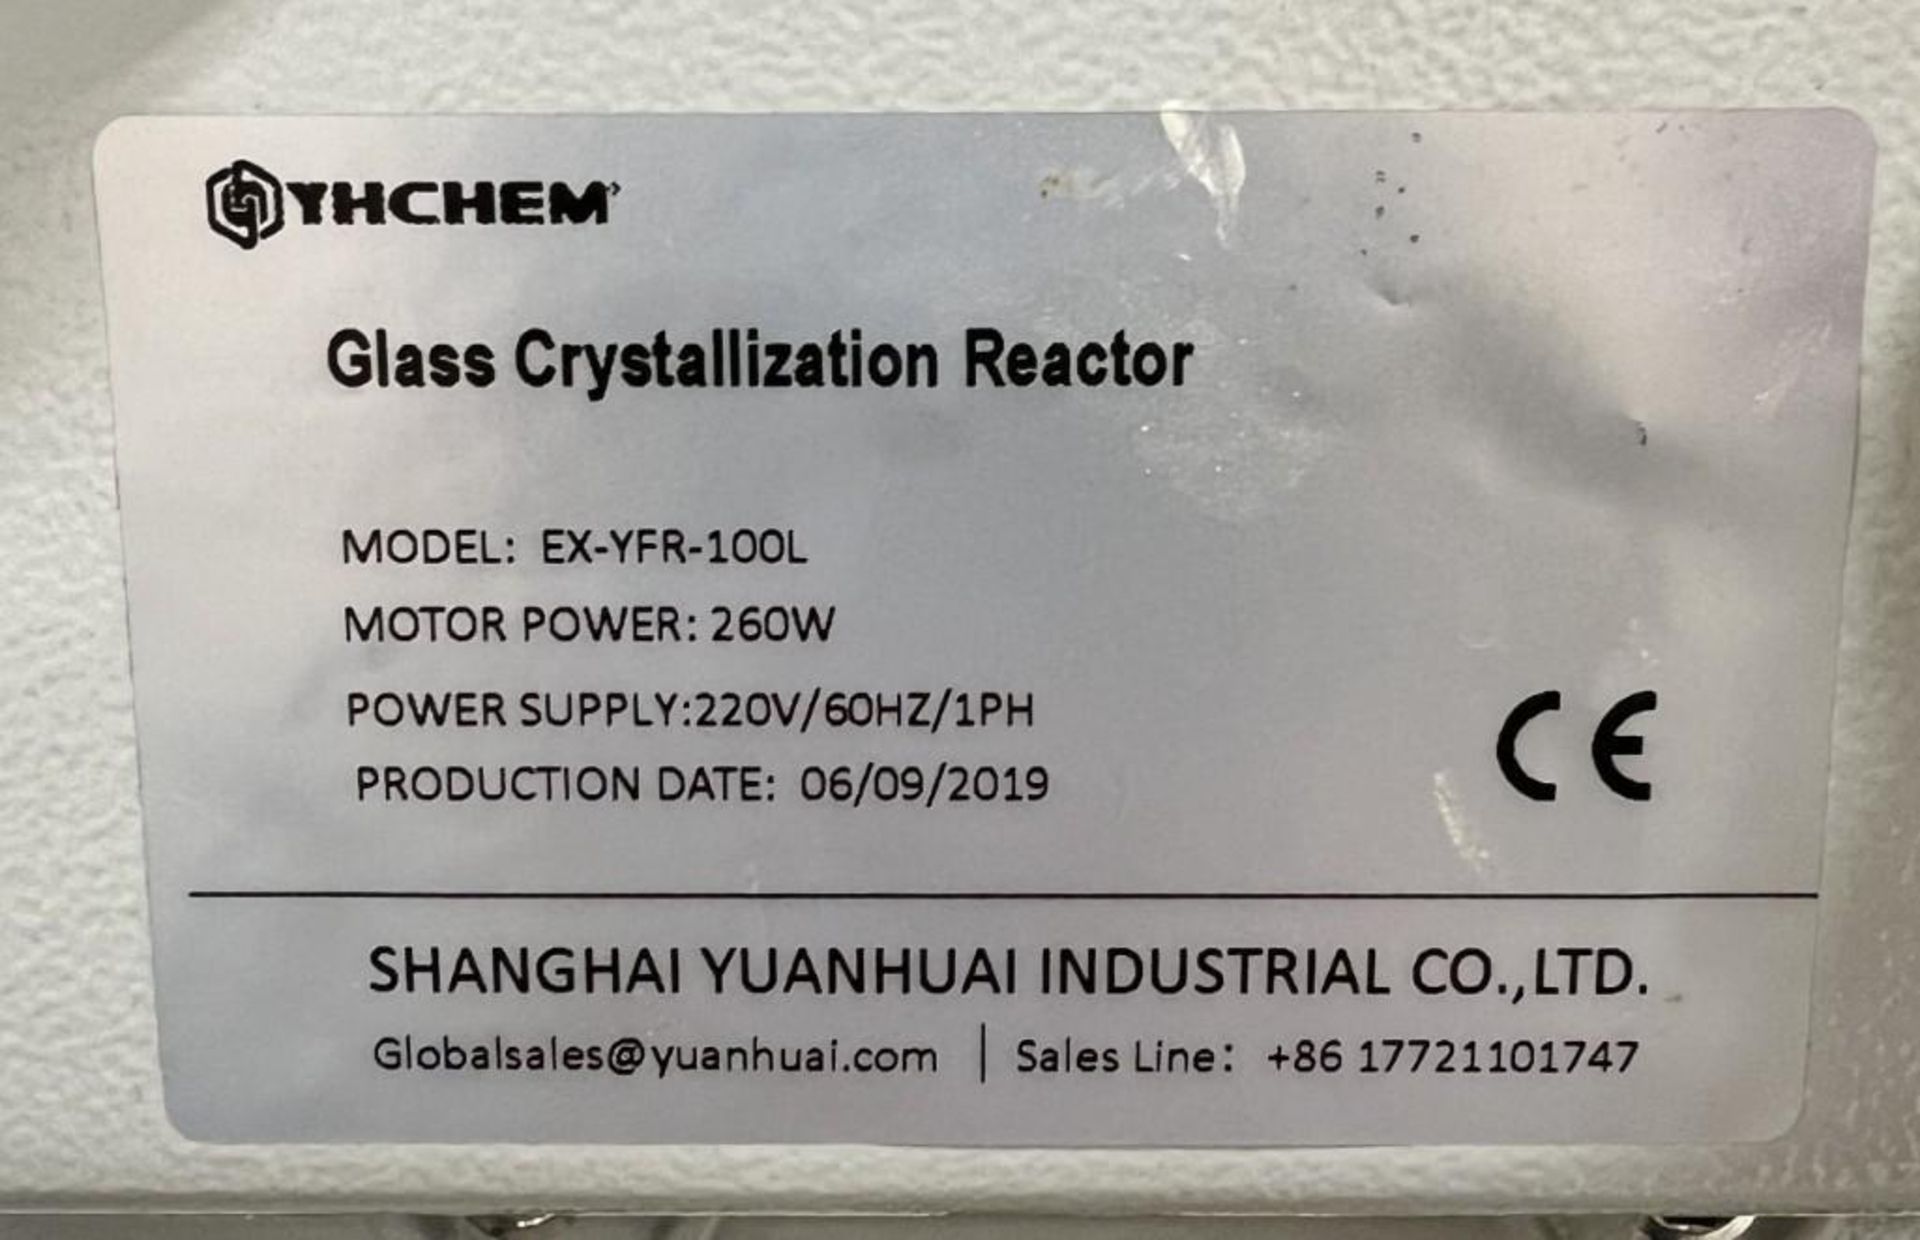 YHCHEM Glass Crystallization Reactor, Model EX-YFR-100L, Built 06/2019. With flask, YHCHEM model YHL - Image 10 of 13